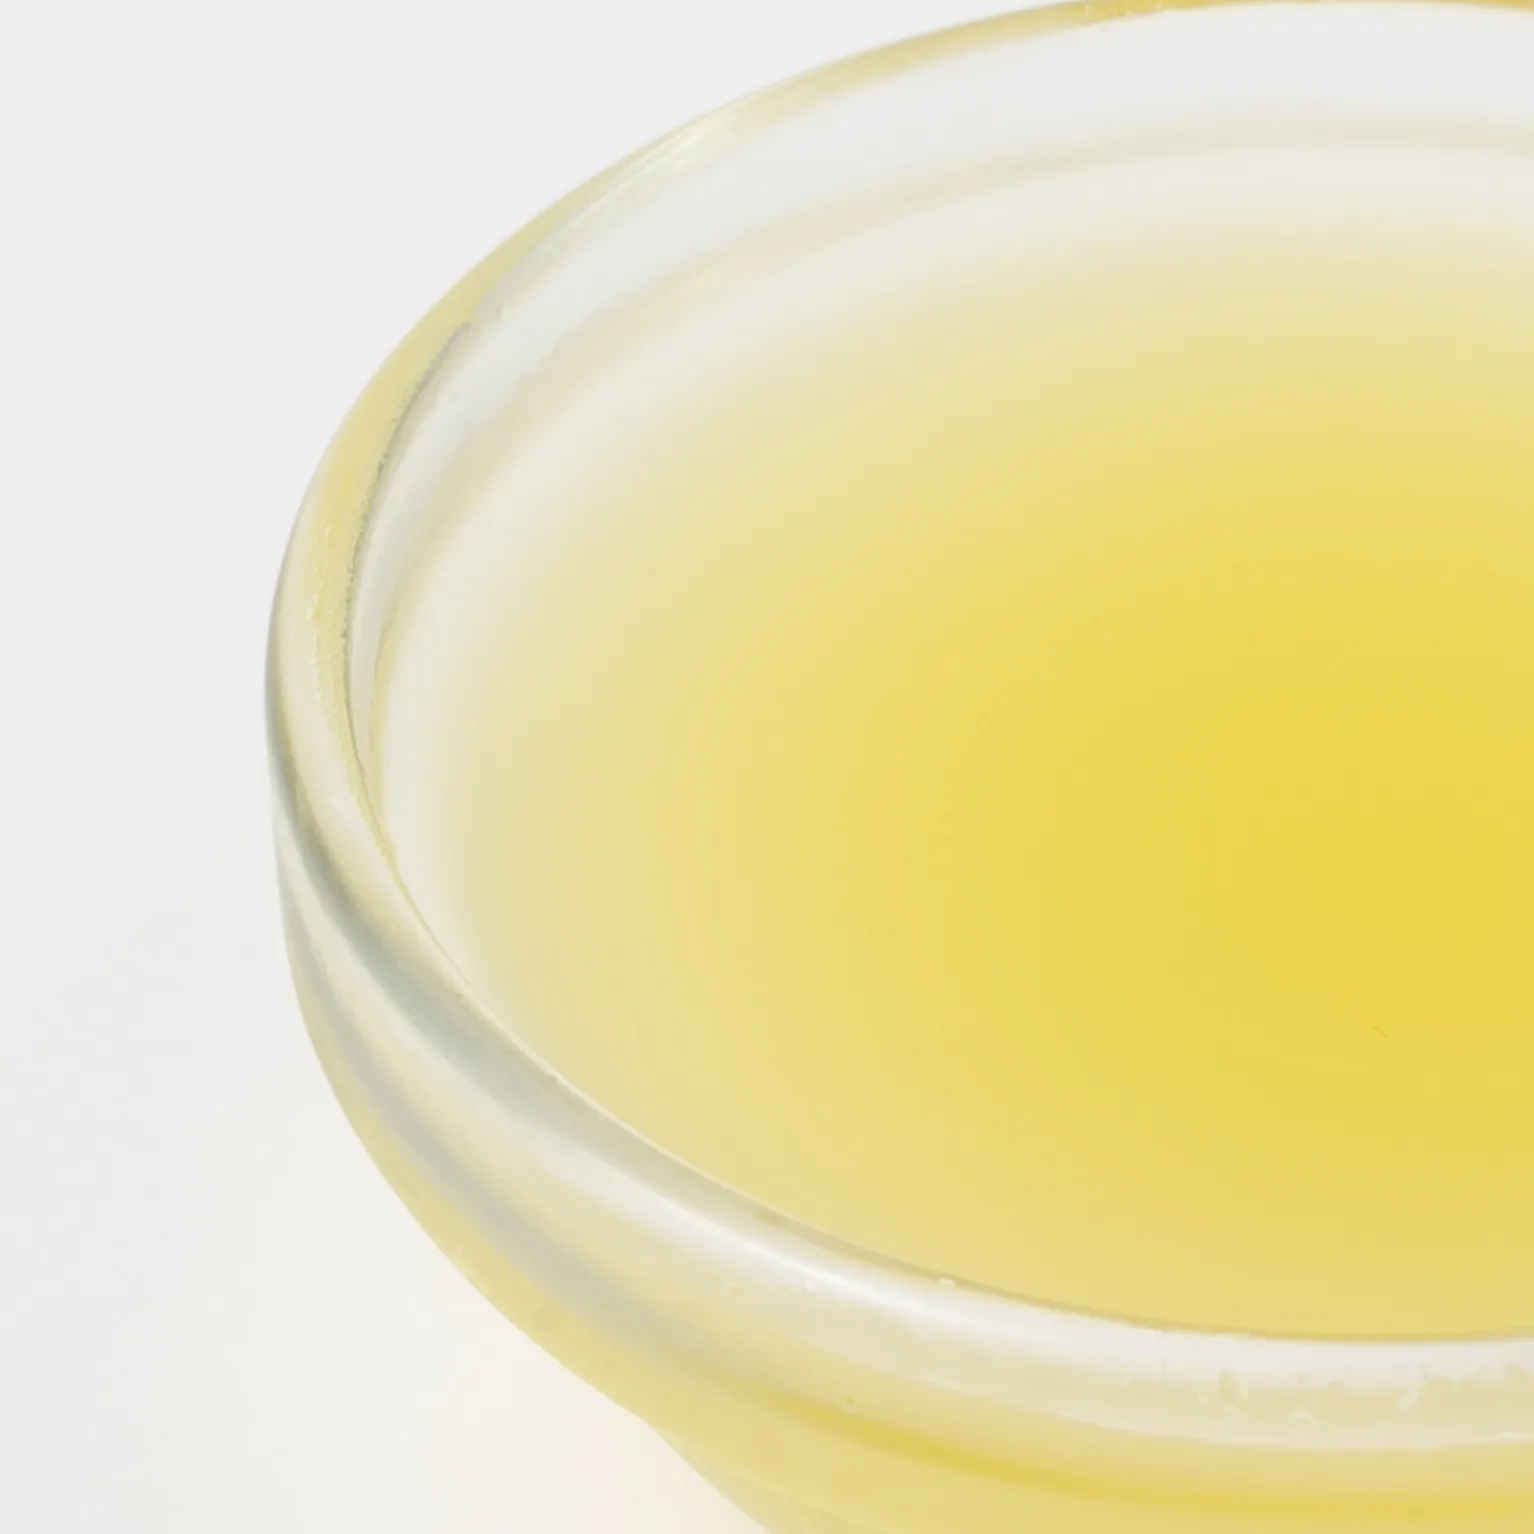 レモン果汁(国産)スクリューパック 1